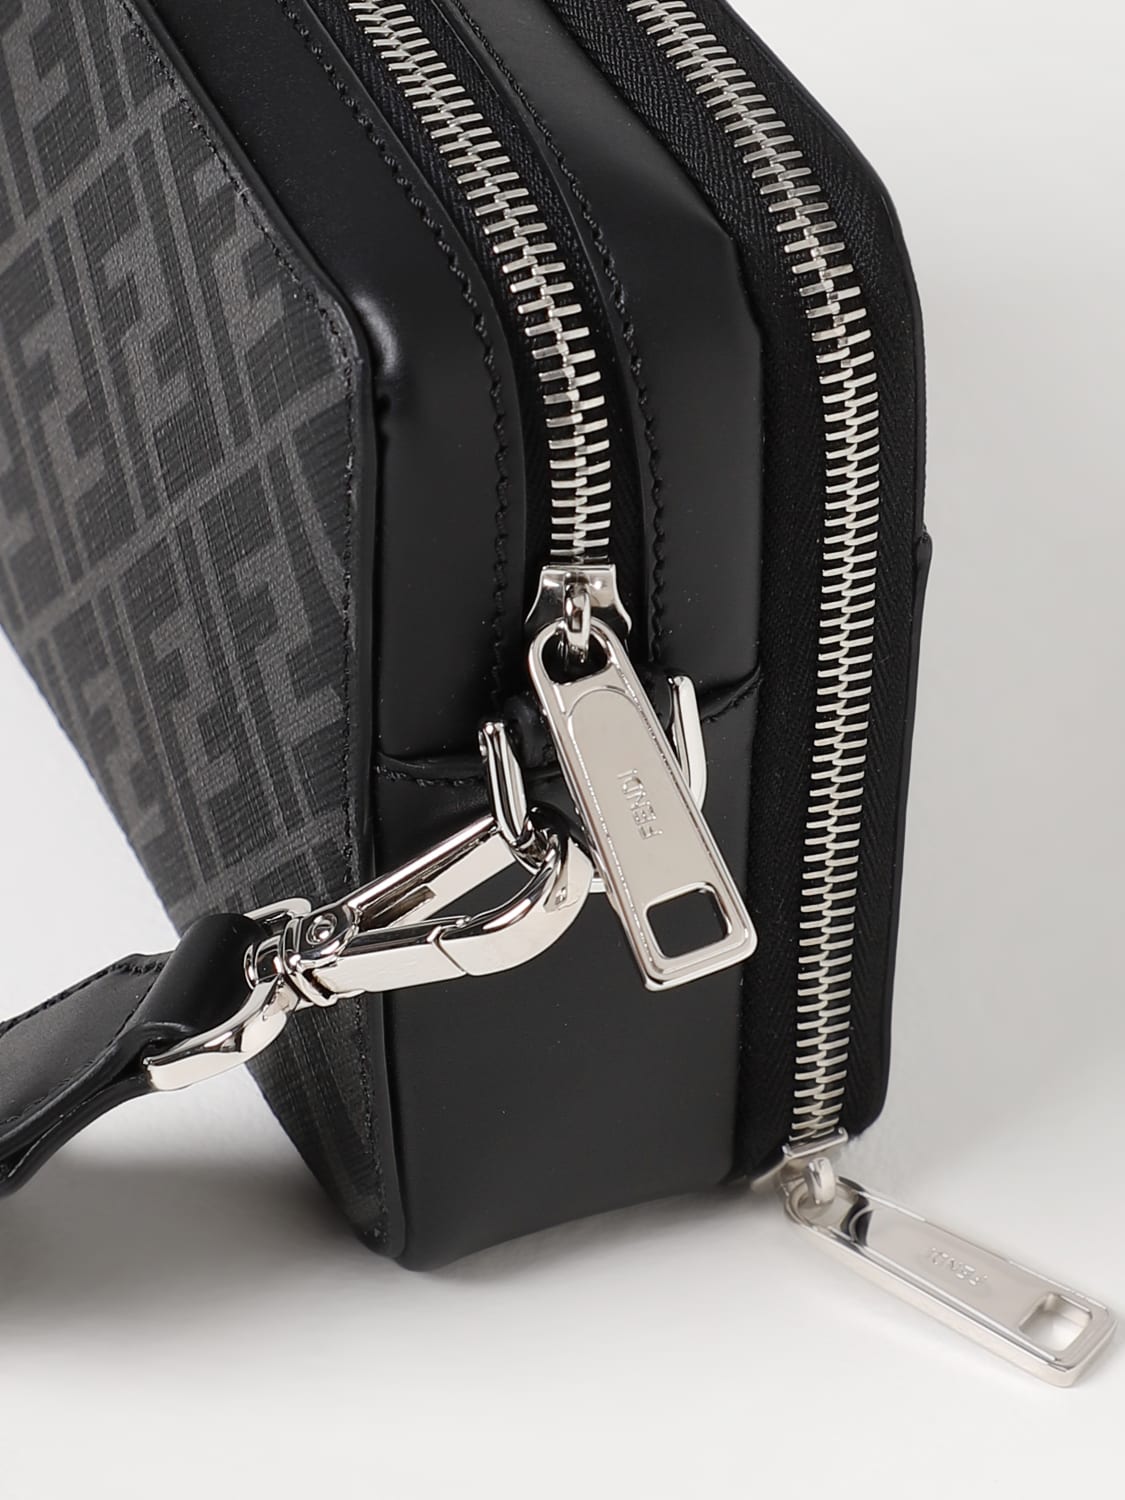 FENDI Mini Camera Case Cross Body Bag in Black